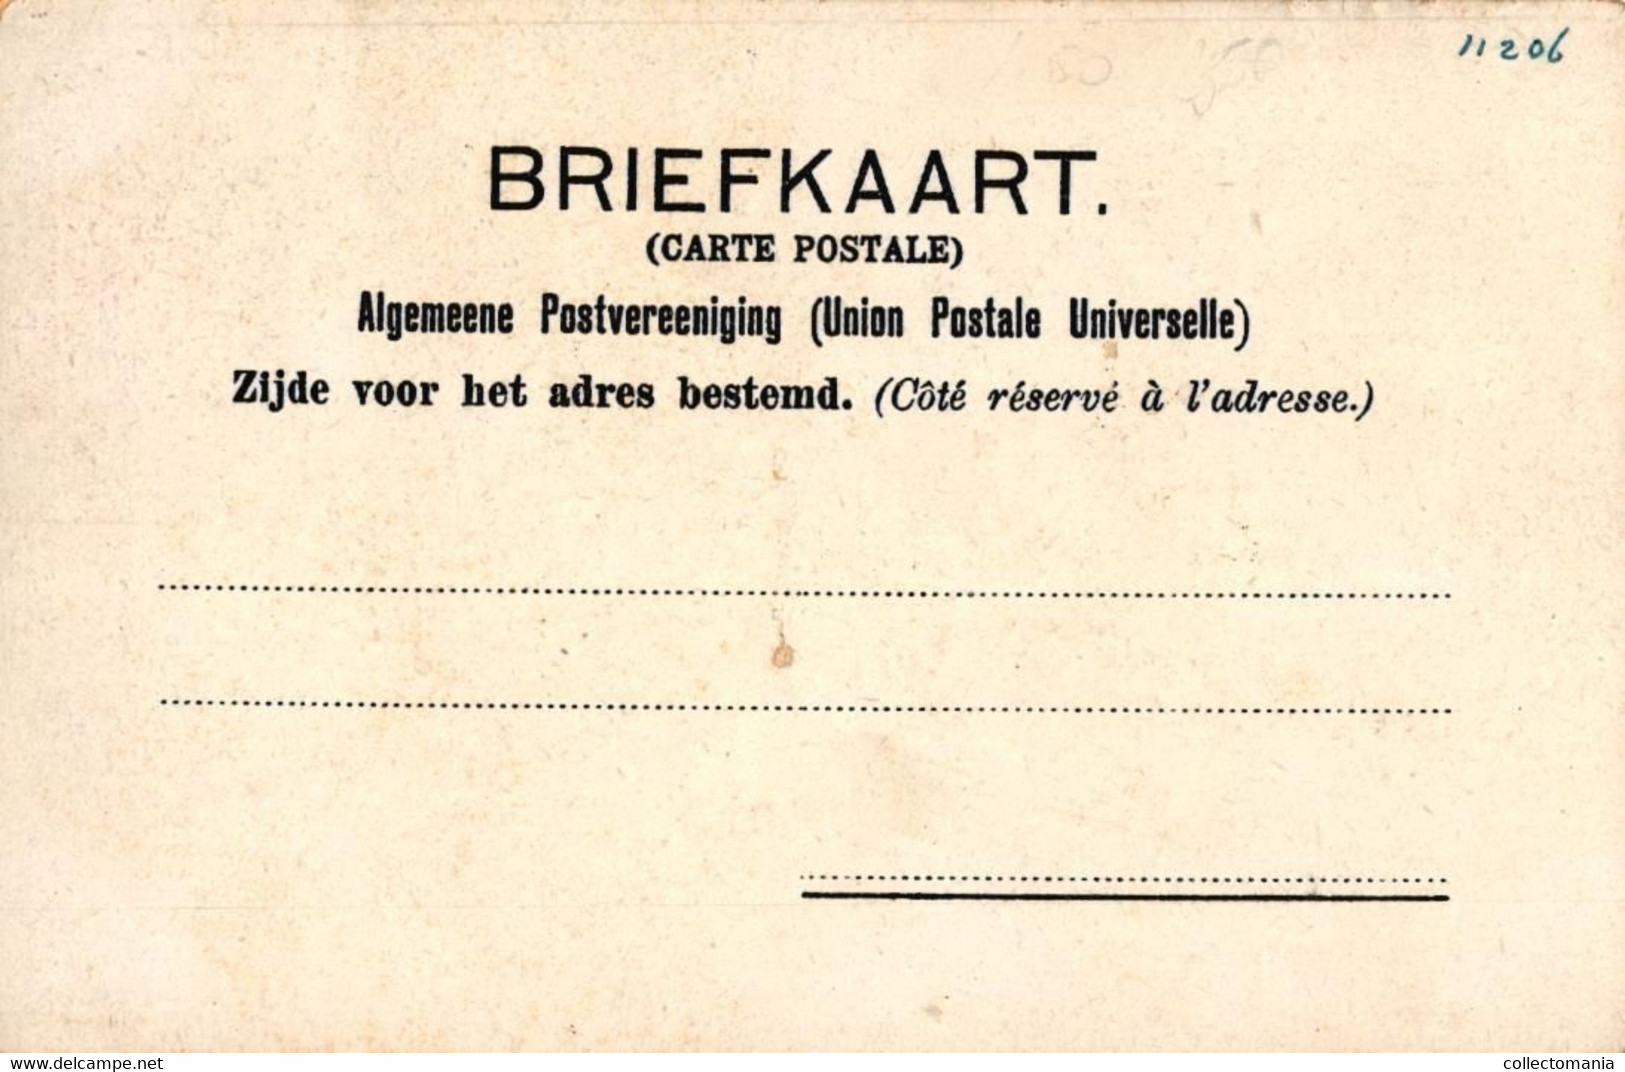 anno 1900 -  5 kaarten Gebroeders Dobbelmann Zeepfabrikanten Nijmegem Lohengrin, Japan, Spanje, zeer mooie reklame